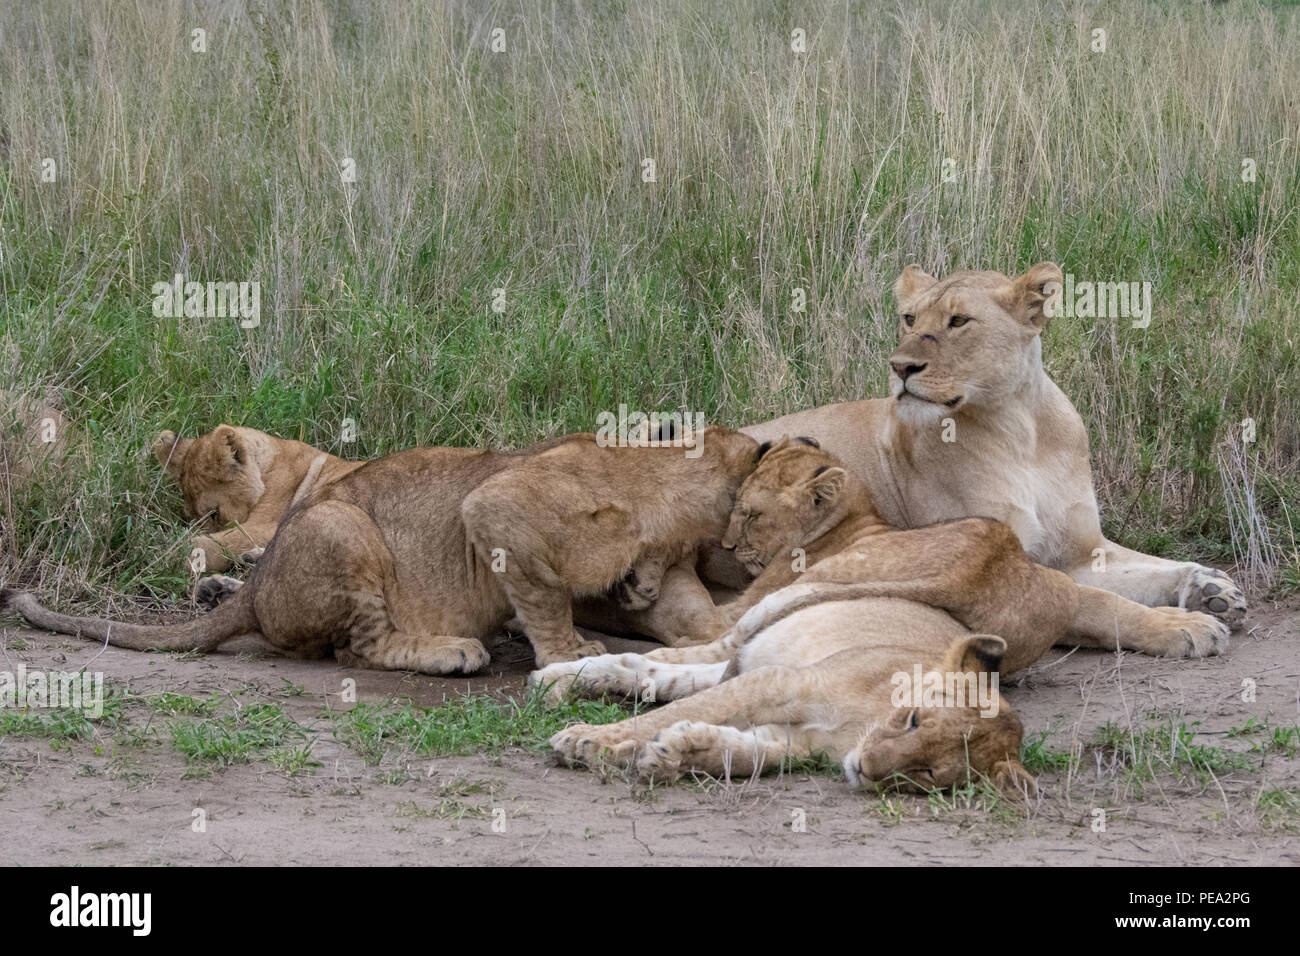 Una leona descansando con los cachorros Foto de stock